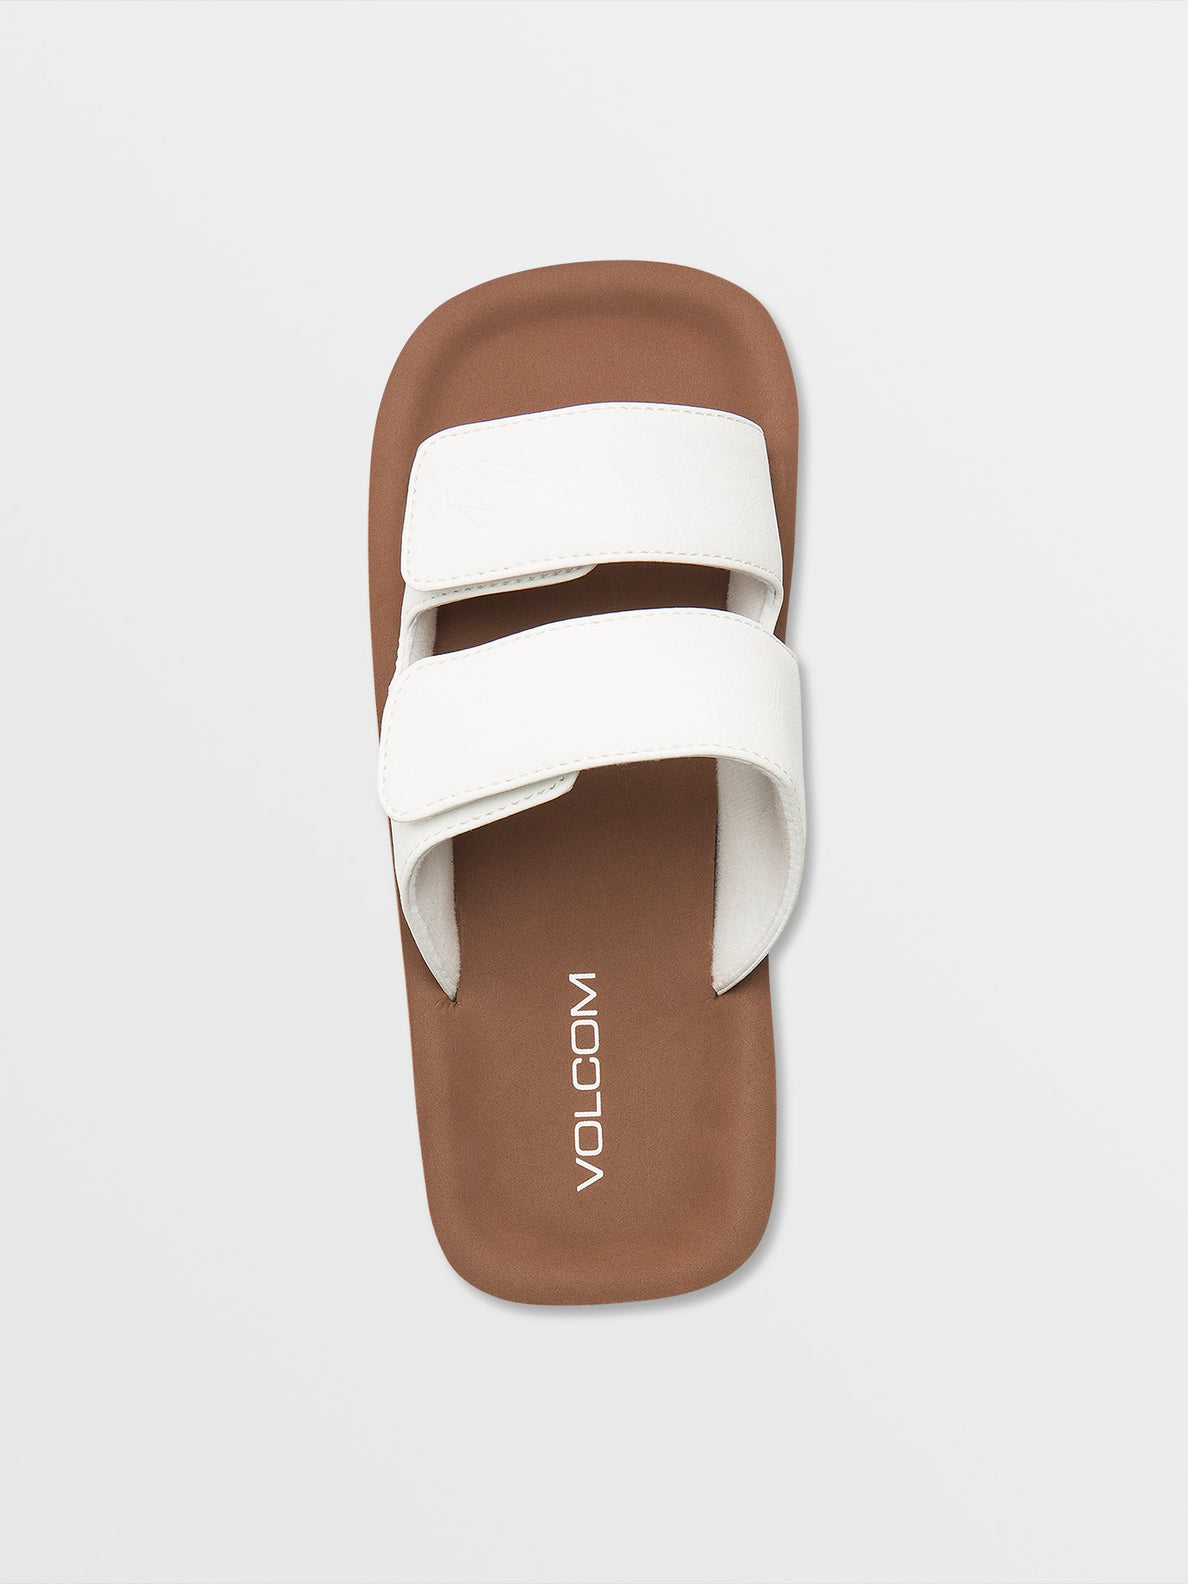 Volcom Squared Sandals - White